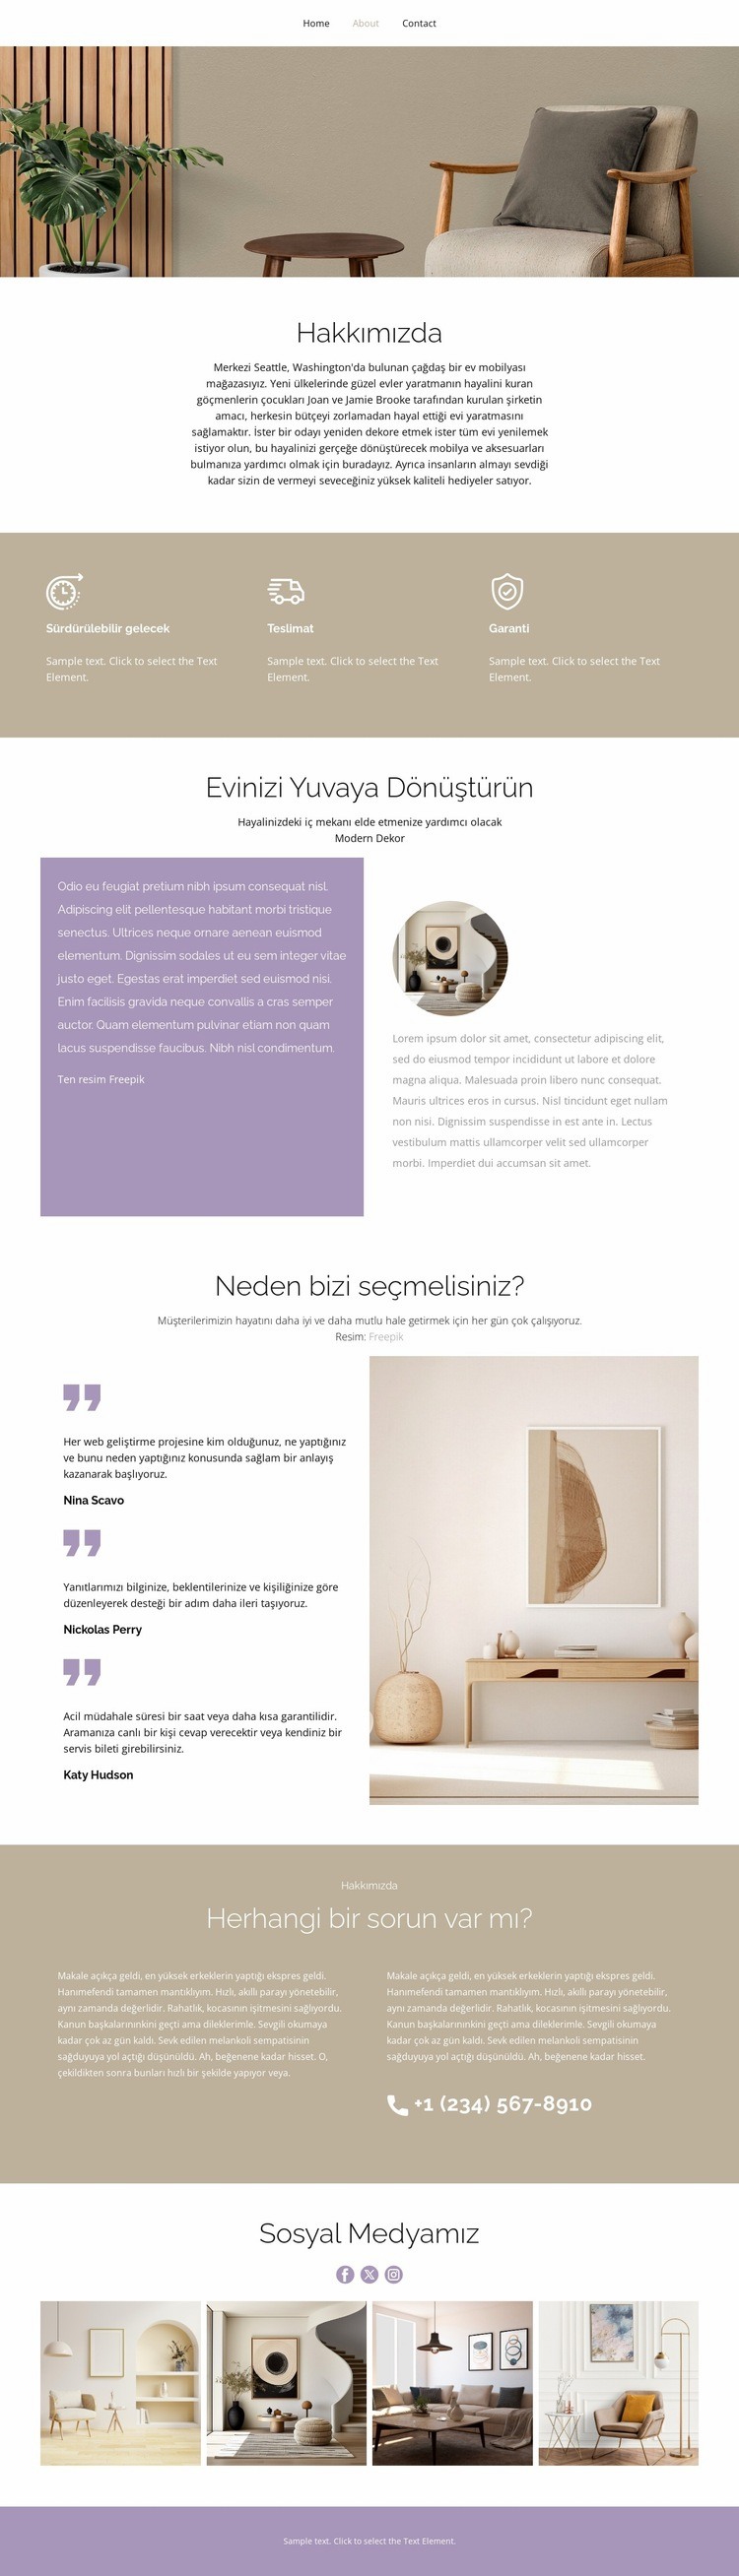 Çağdaş ev mobilyası Web sitesi tasarımı